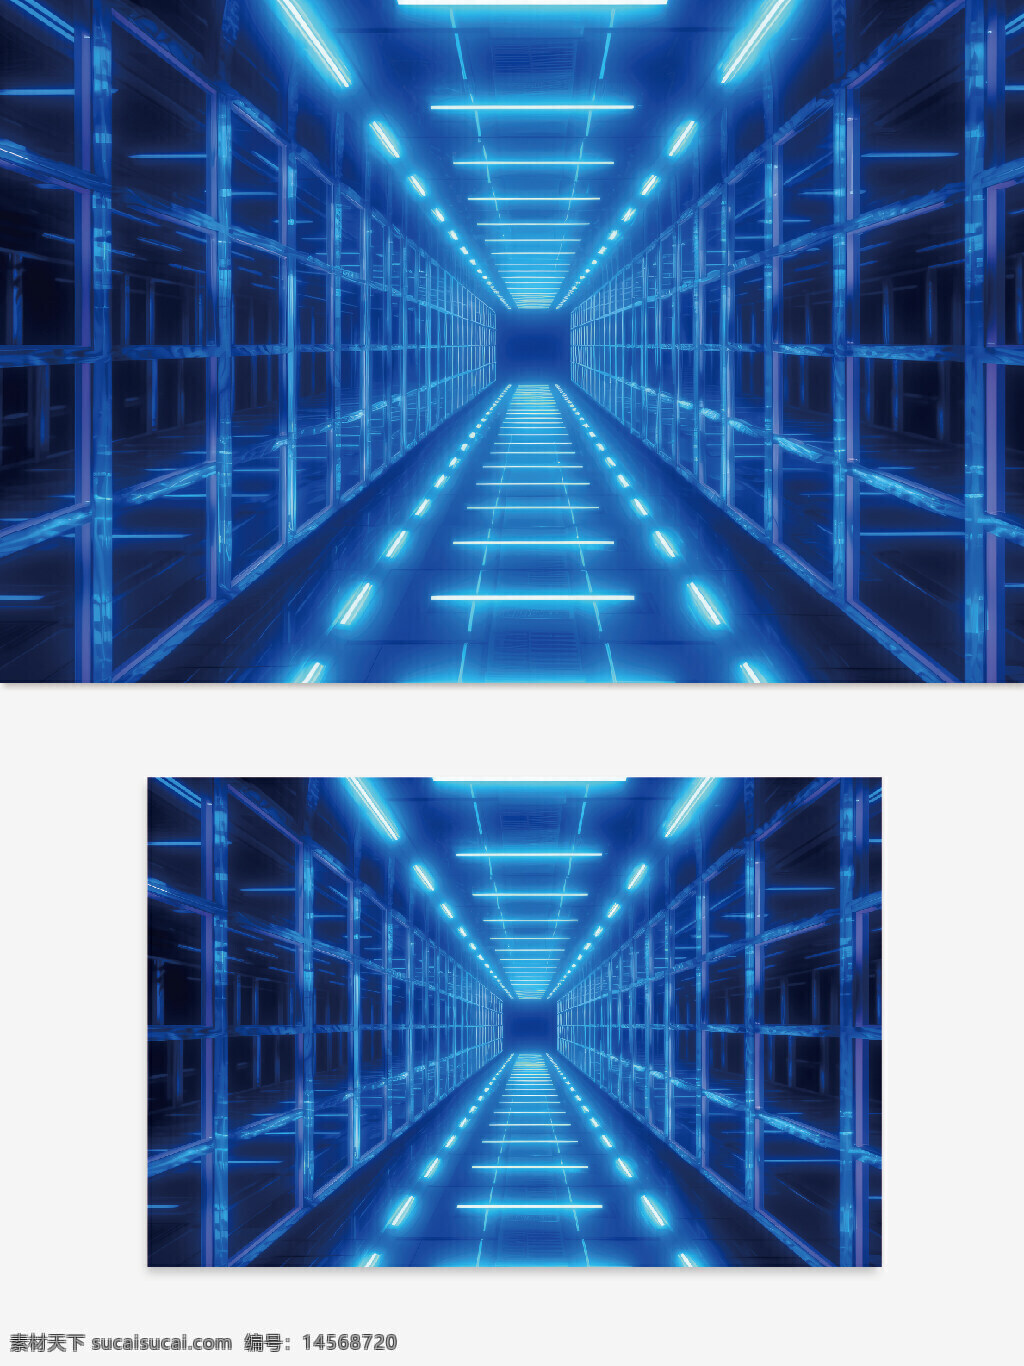 无限空间 空间设计 蓝色空间 空间创意 空间元素 蓝色线条 蓝色科技 无限符号 x符号